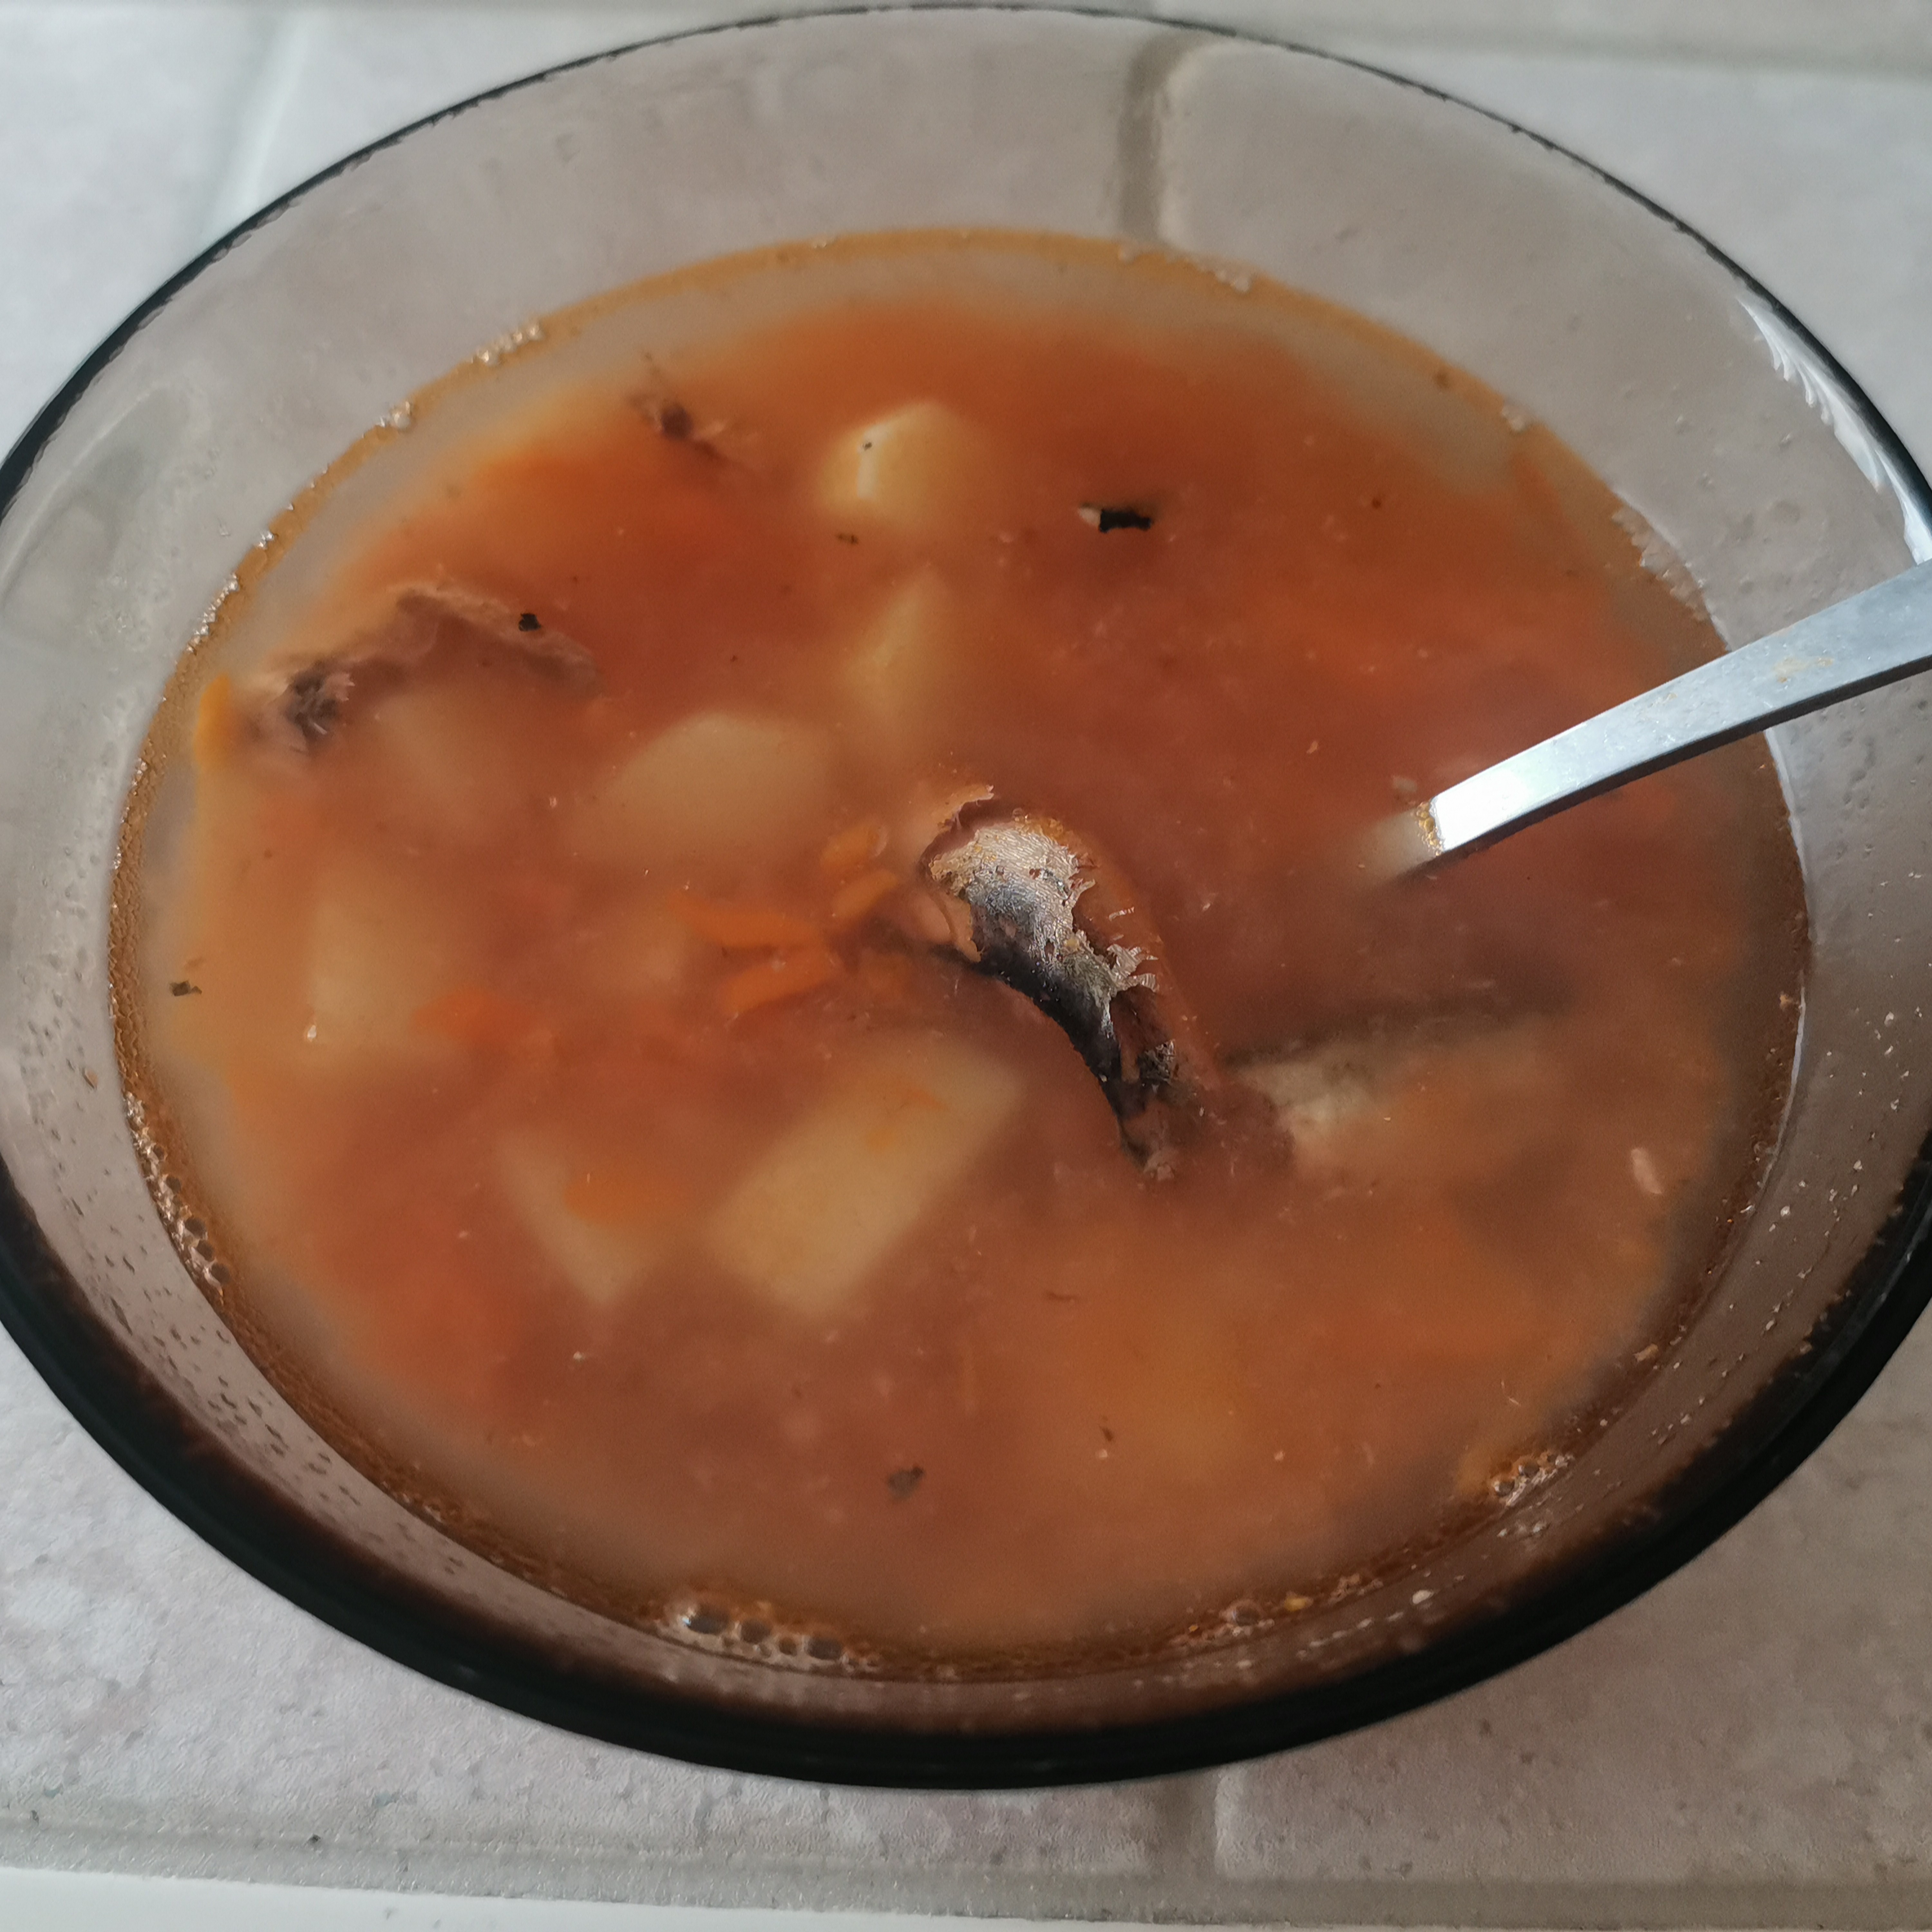 Суп с килькой в томатном соусе, рецепт